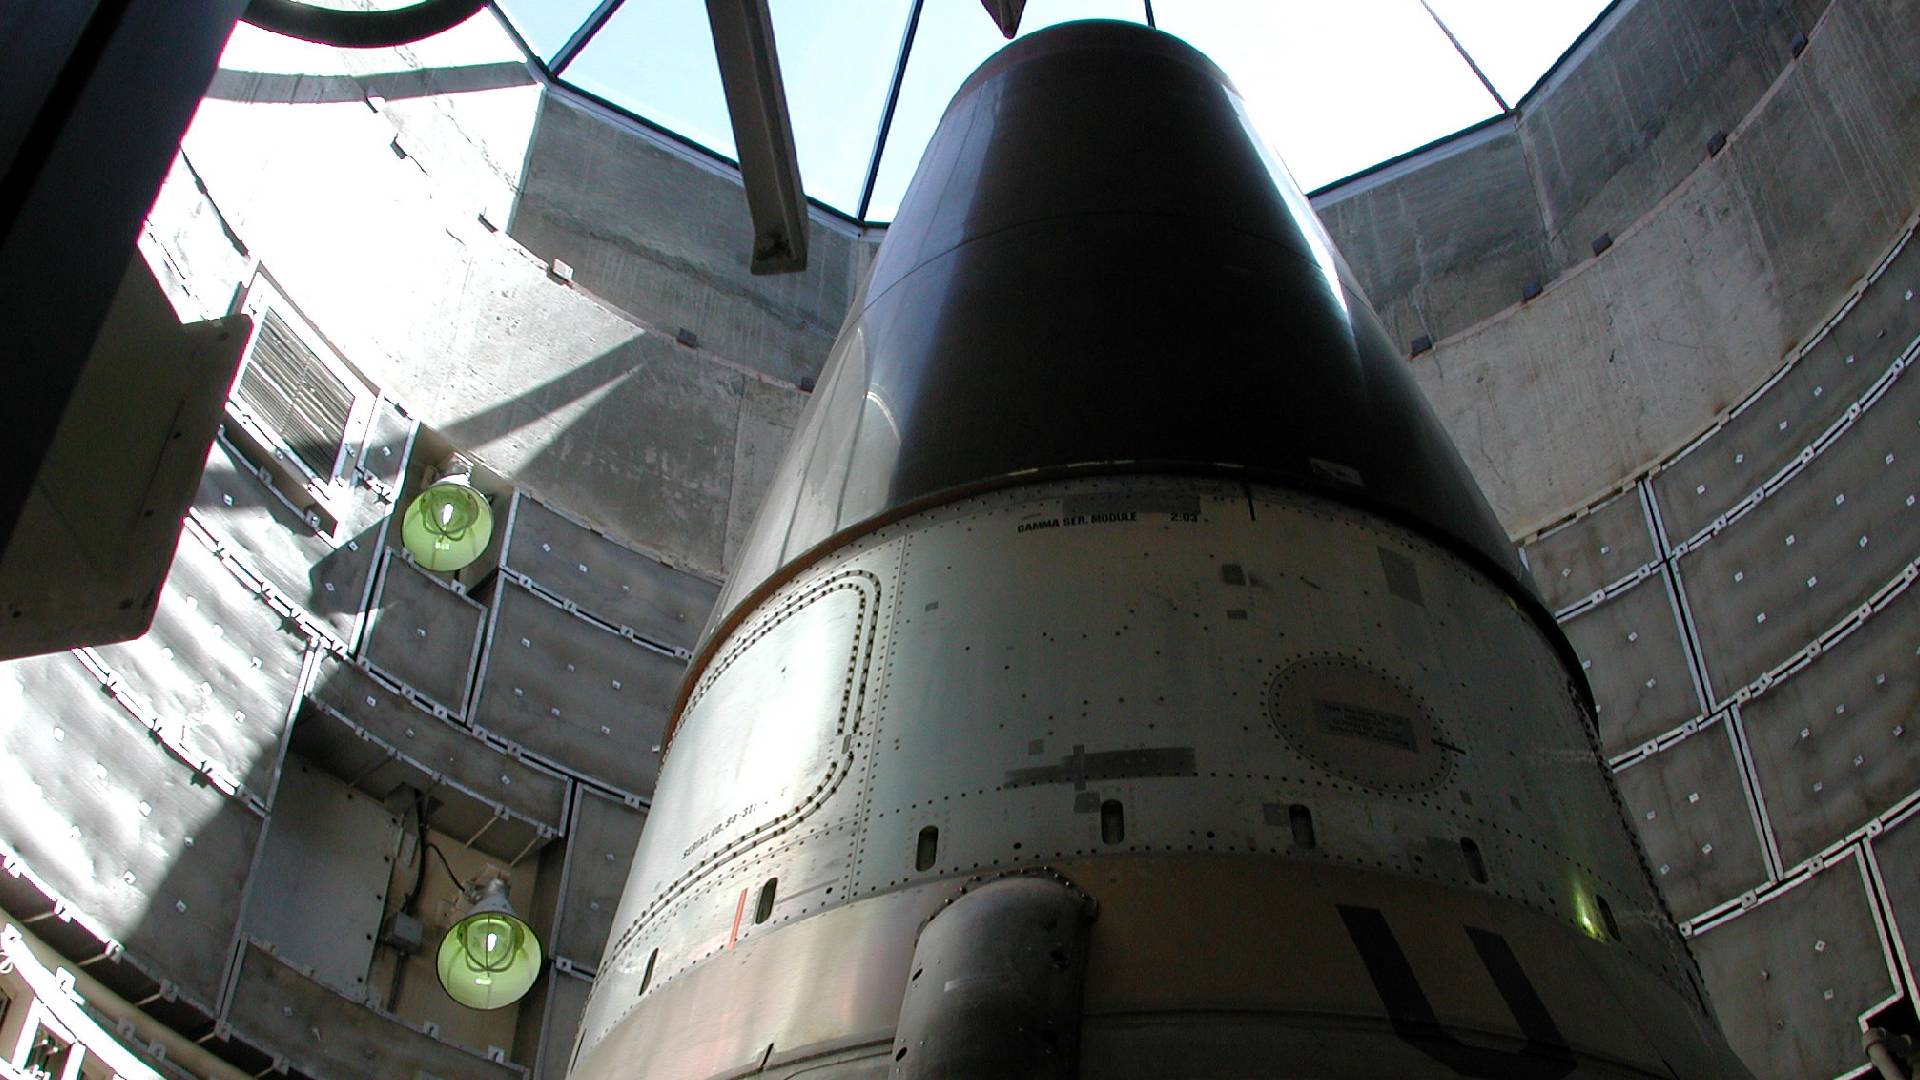 Mezikontinentální balistická raketa Titan II